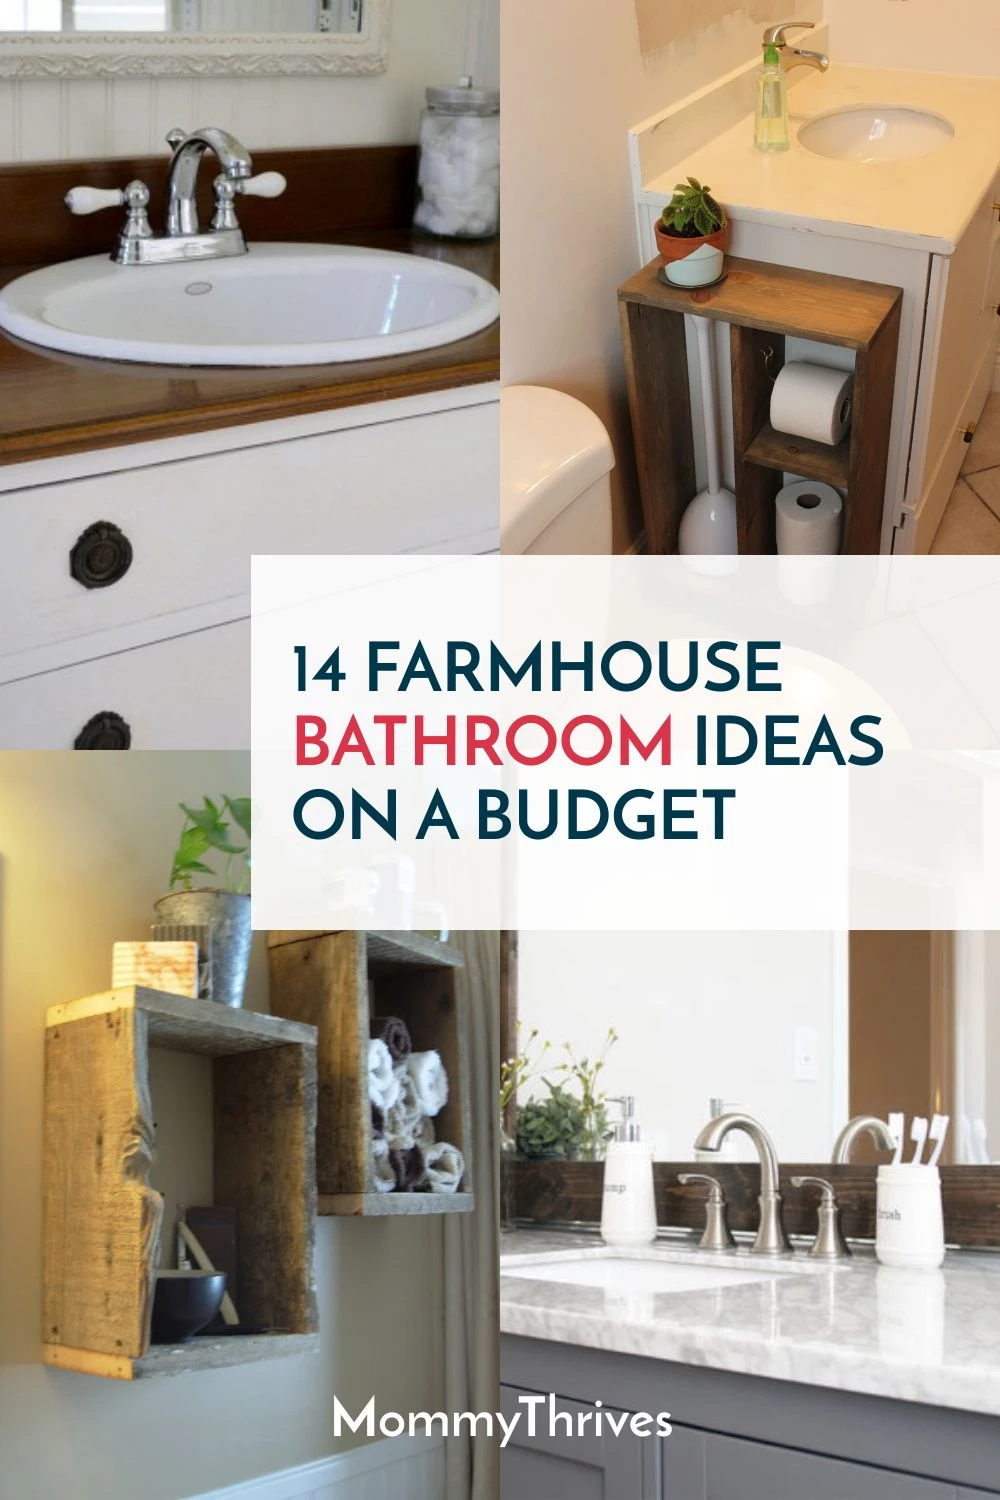 18 Farmhouse Bathroom Ideas On A Budget   MommyThrives